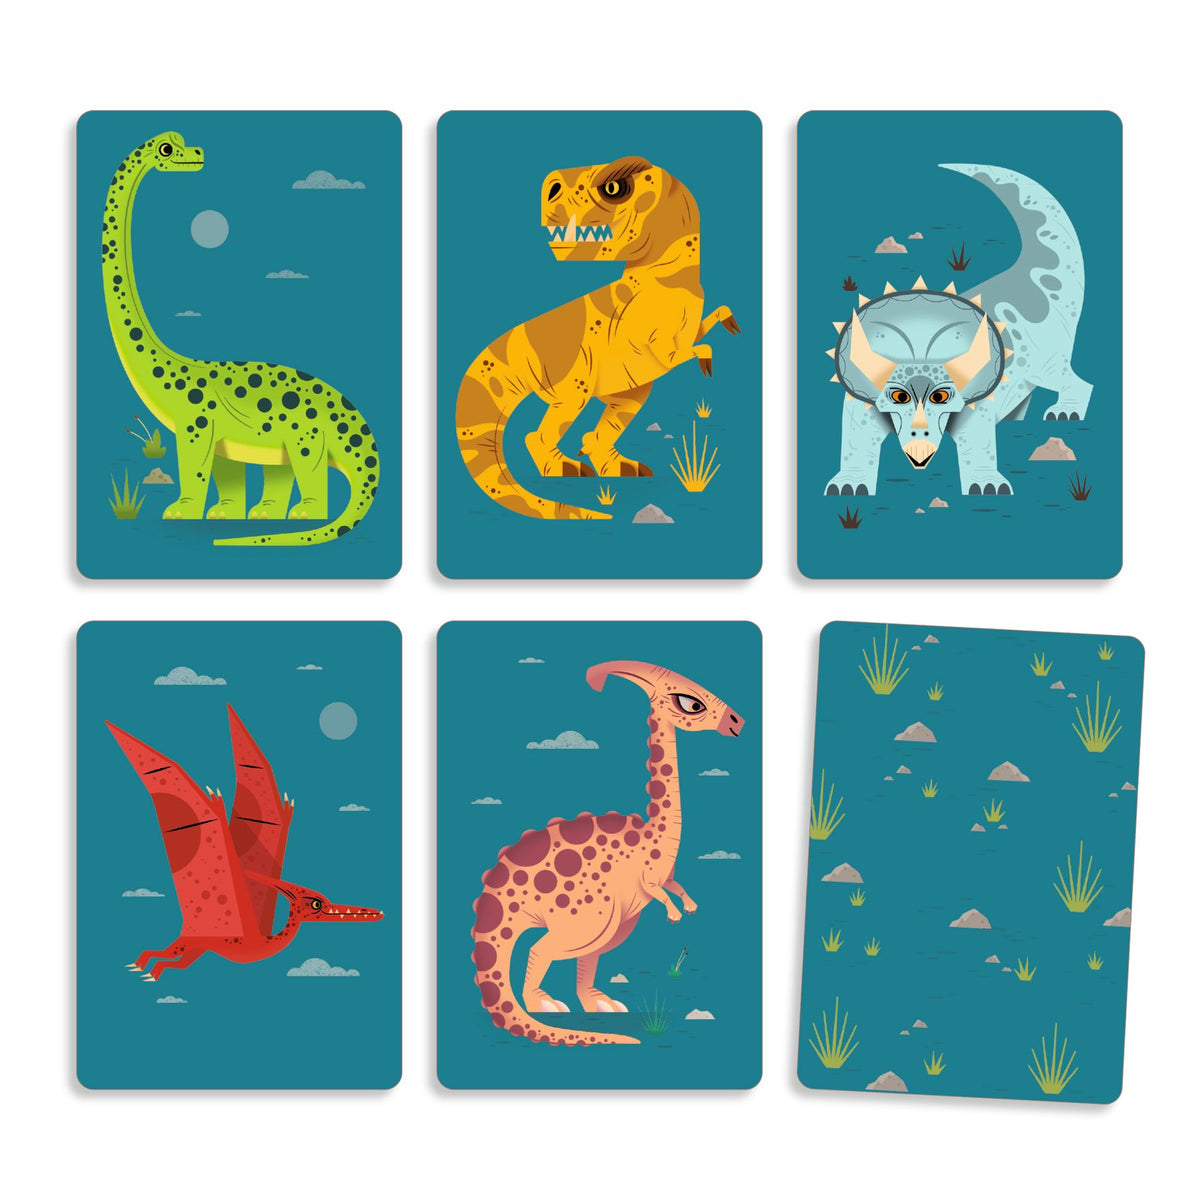 Stegosaurus, Triceratops, Brachiosaurier und Flugsaurier sind out. Bei diesem Spiel zirkulieren die Karten von Hand zu Hand und bei jedem Zug darfst du nur eine behalten.  - Entwurfs- und Strategiespiel. - Ein Spiel, um die Mechanik des "Entwurfs" zu lernen.